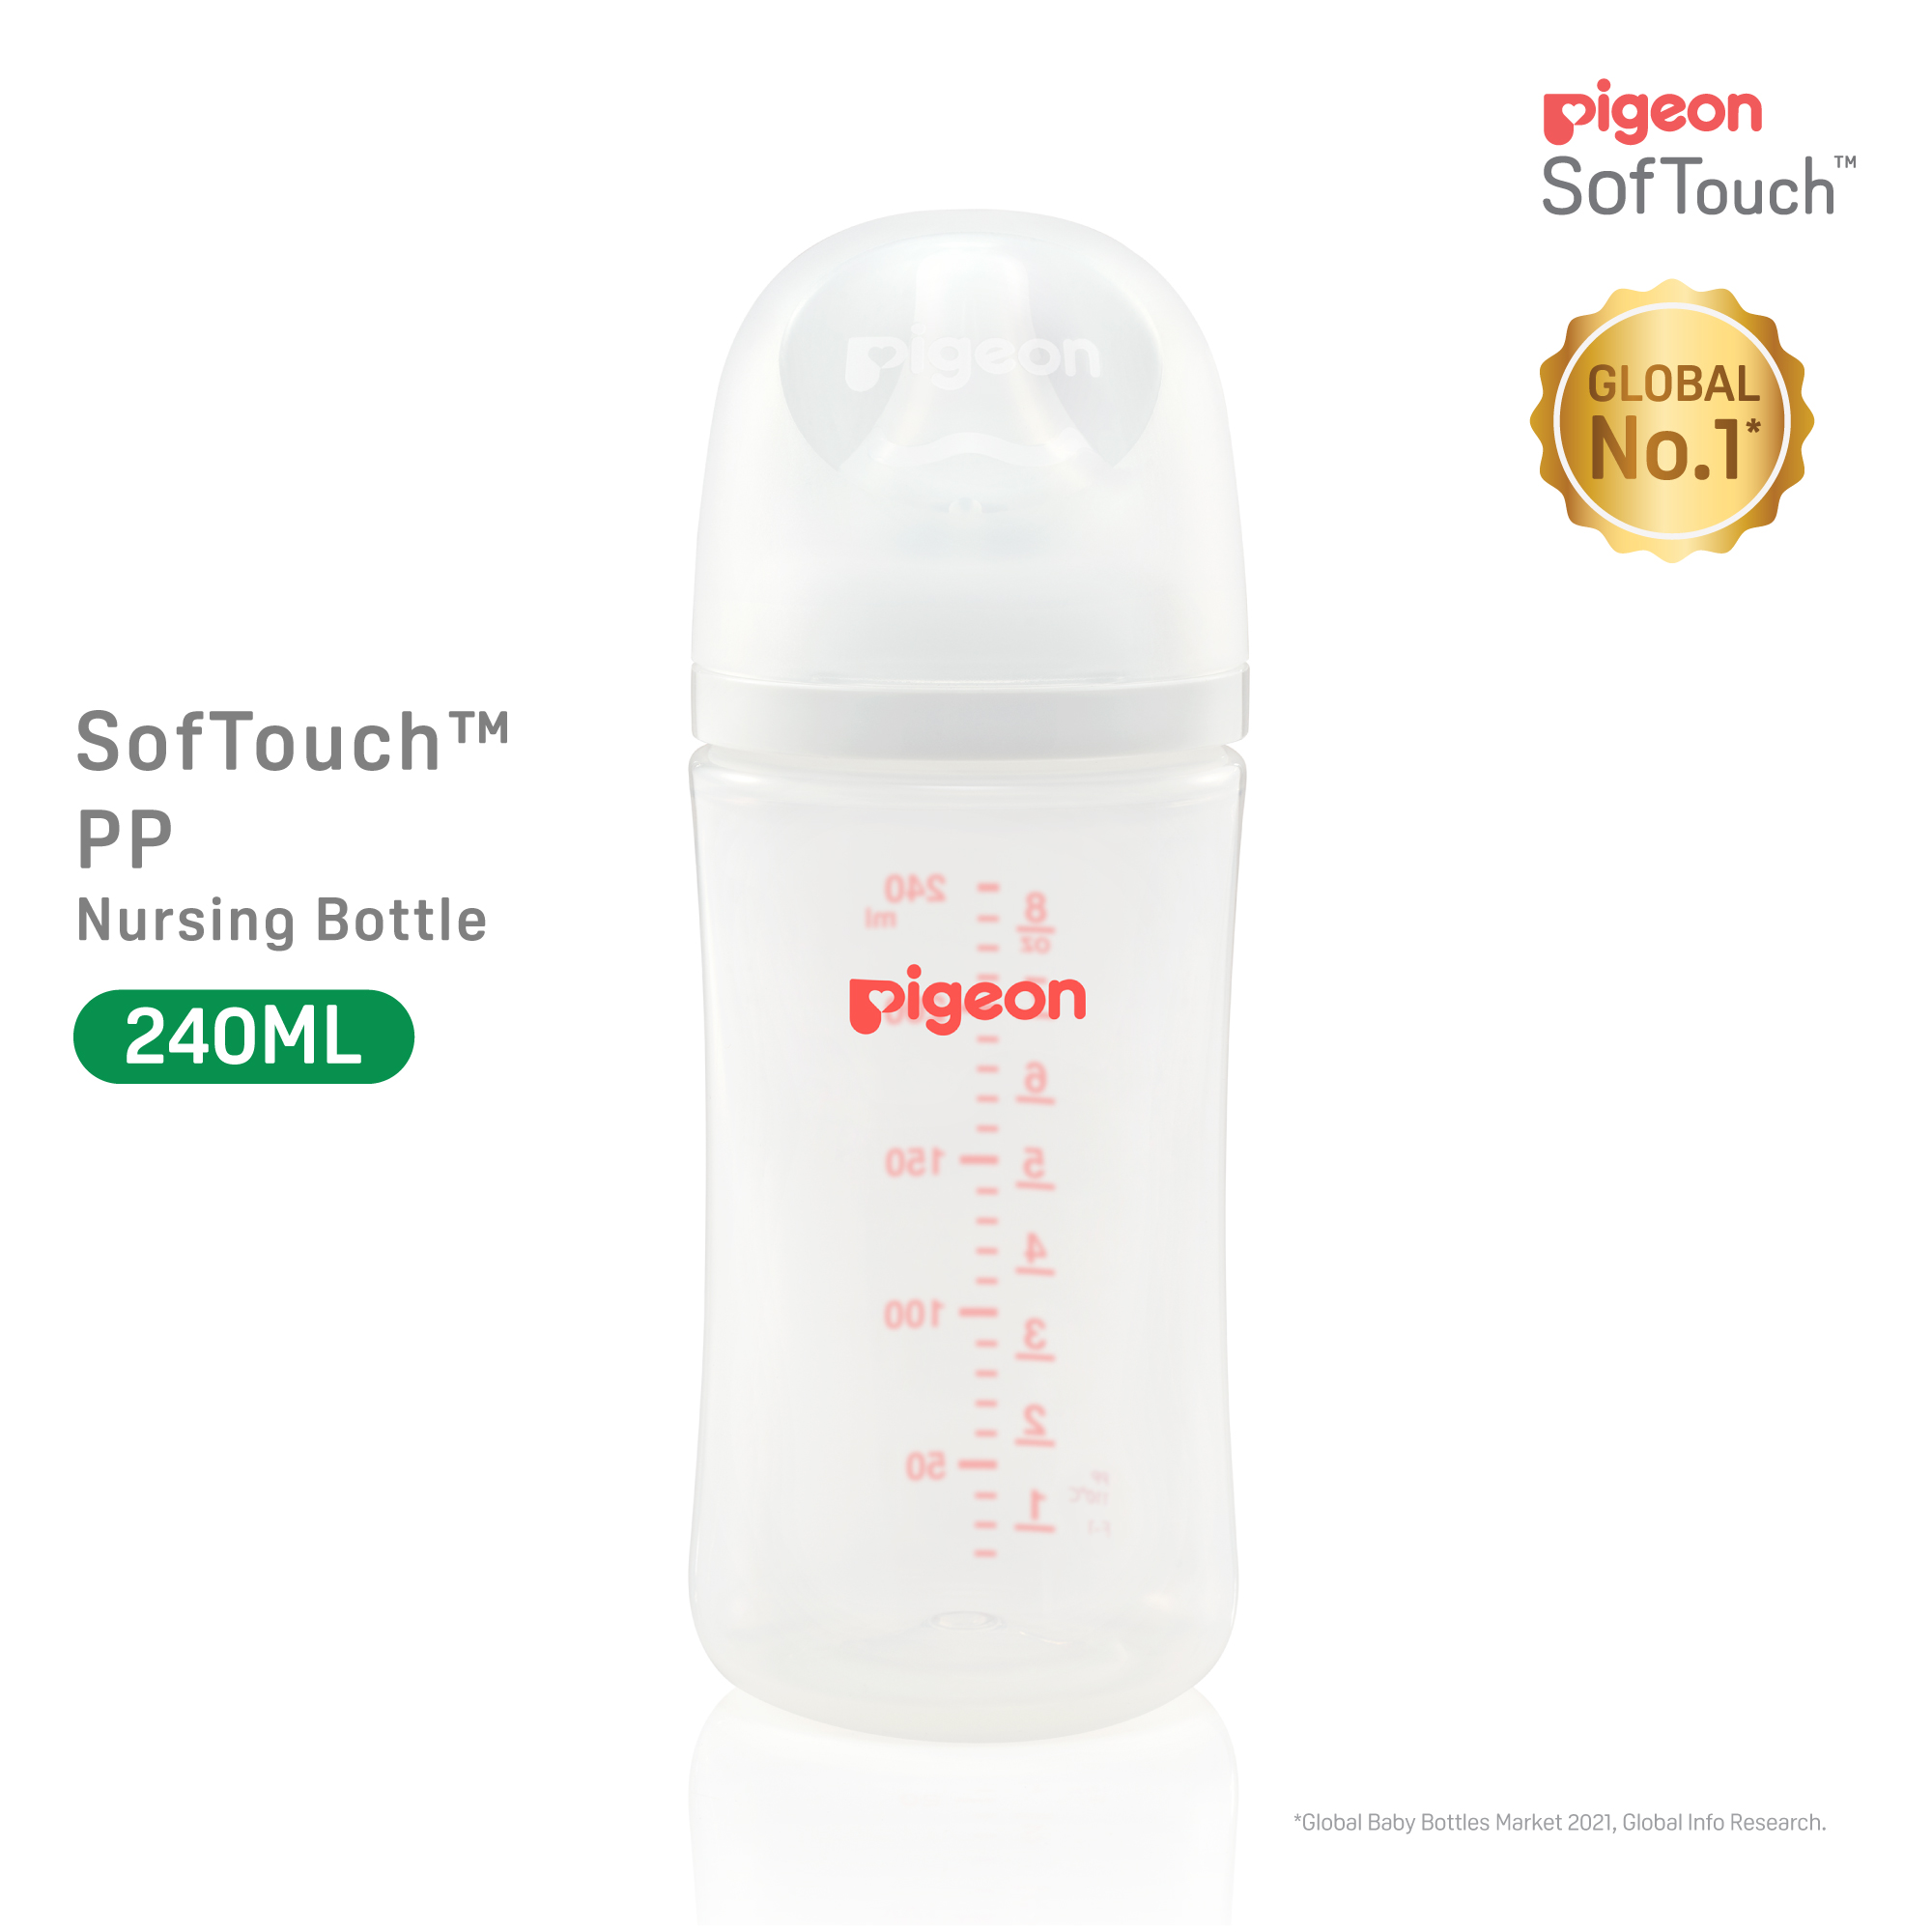 Pigeon SofTouch 3 Nursing Bottle PP 240ml Logo (PG-79453)